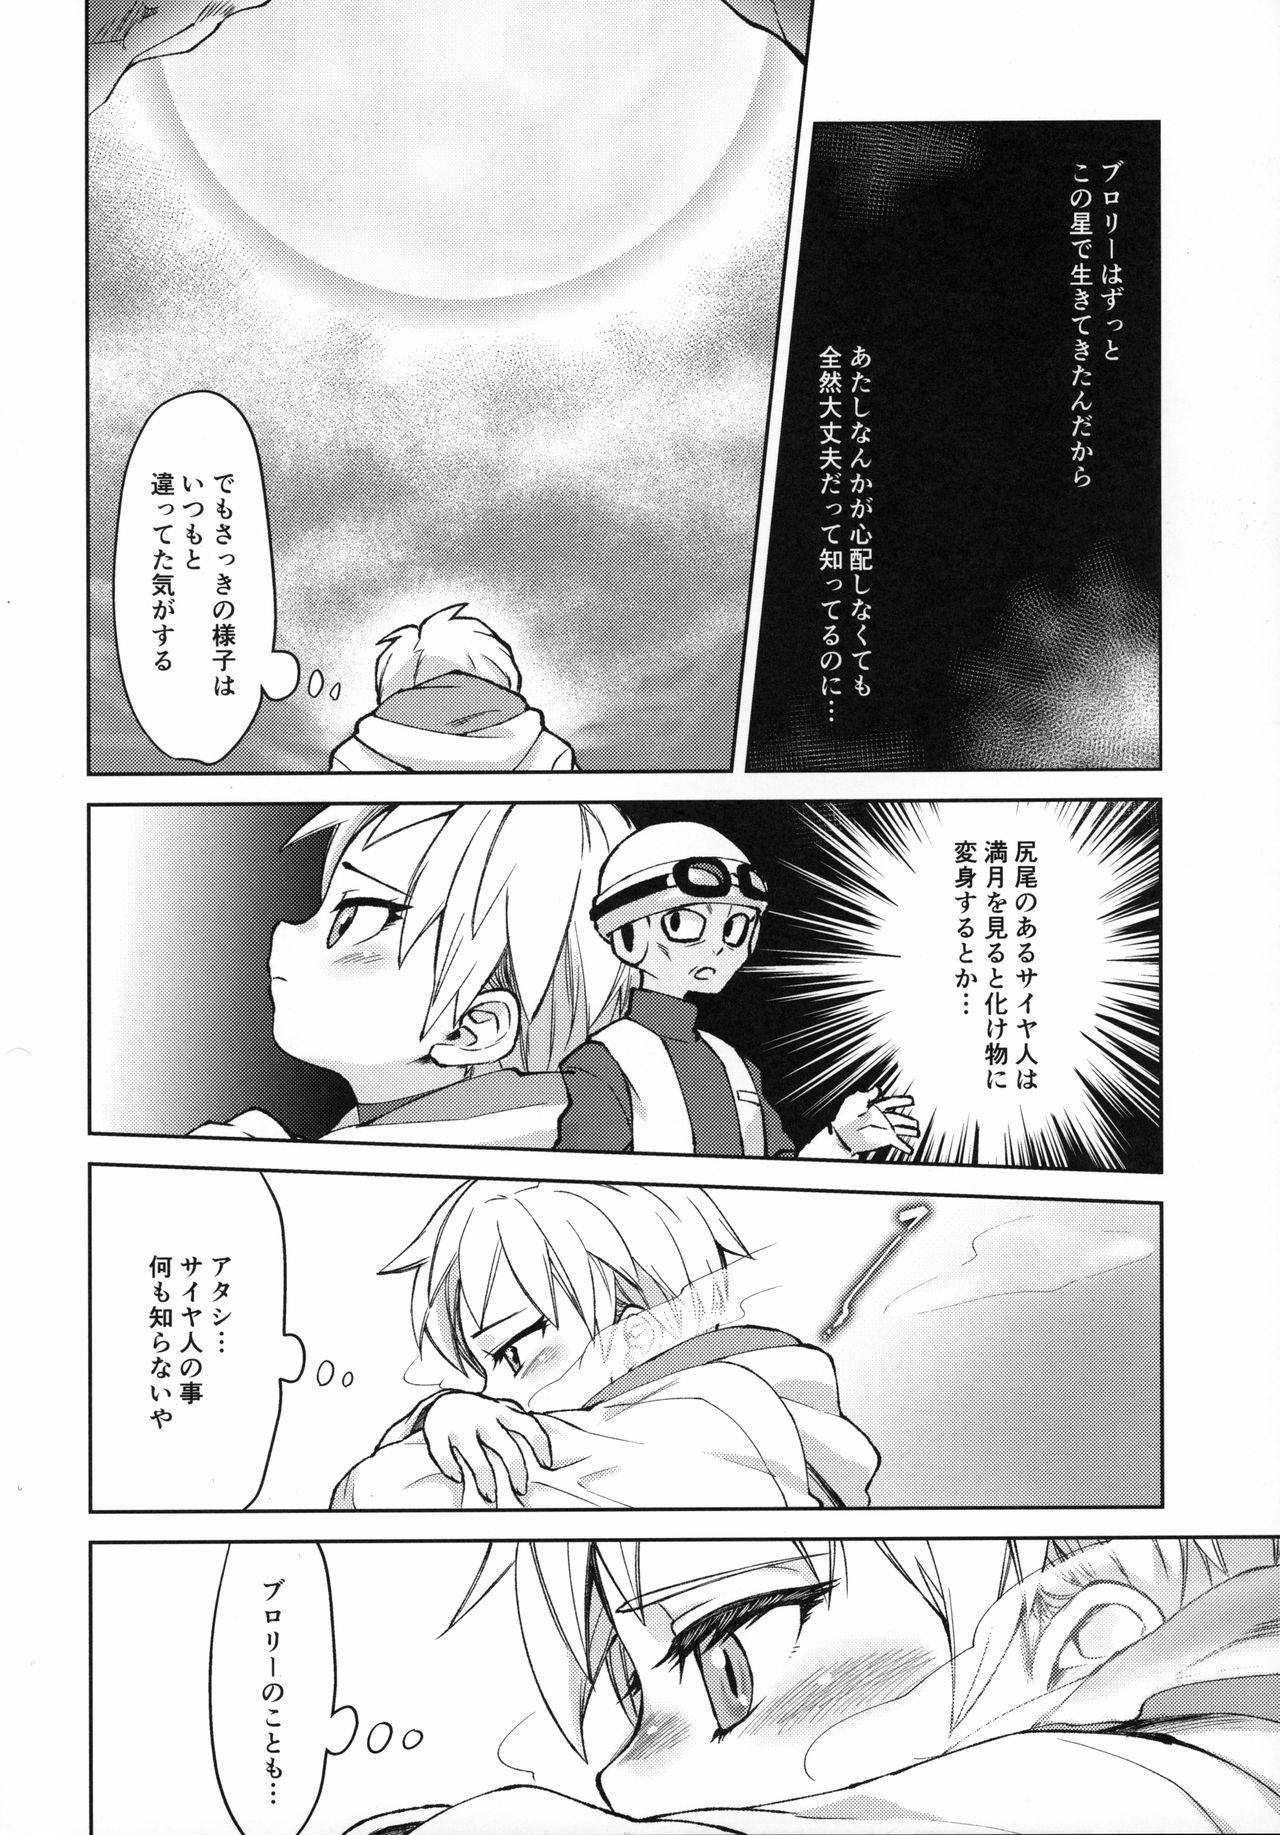 Bucetinha Tsukiyo ni Kawaku - Dragon ball super 19yo - Page 9